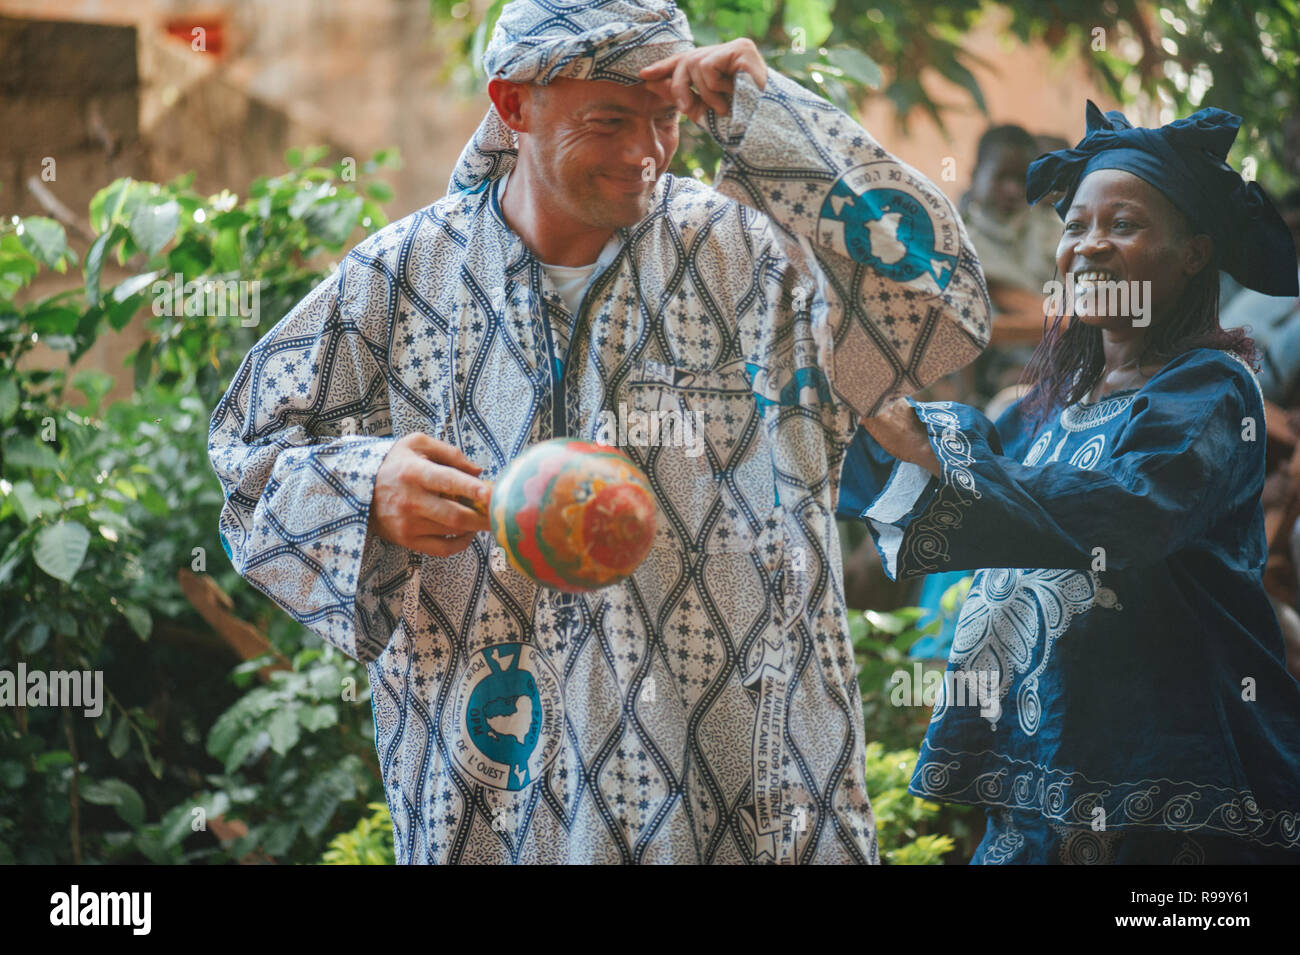 Reifen kaukasischen Mann, Gesang und Tanz. Multi-ethnische Musik party Western- und Entwicklungsländern Zusammenarbeit zu feiern. Bamako, Mali. Afrika Stockfoto